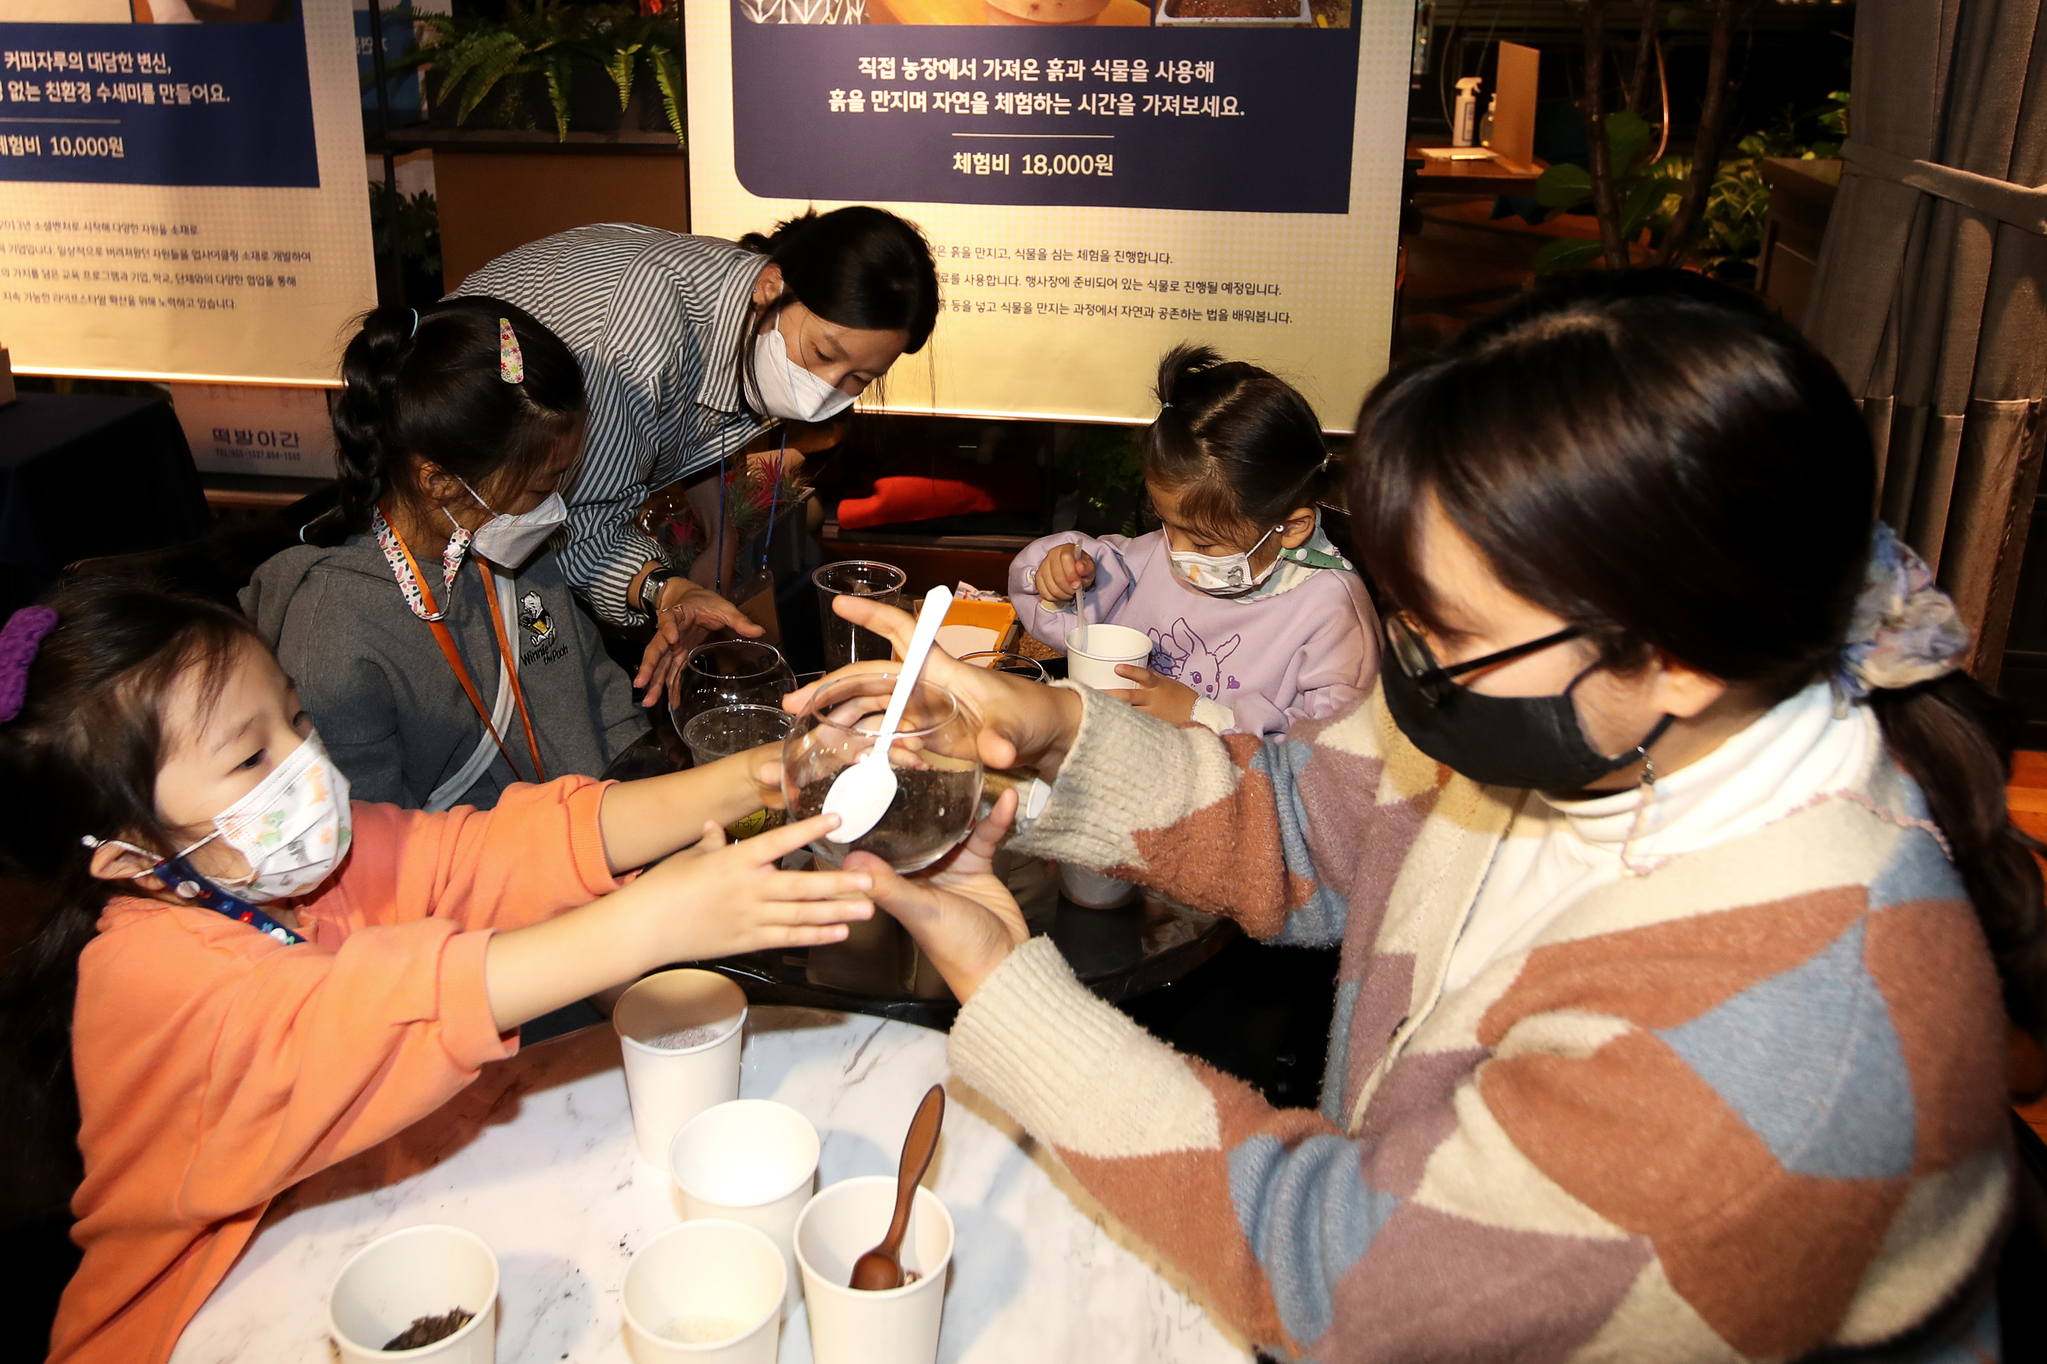 12~14일 메가박스 성수점 더부티크에서 열리는 '위아자 에코빌리지'를 찾은 가족이 가드닝 체험을 하고 있다. 장진영 기자